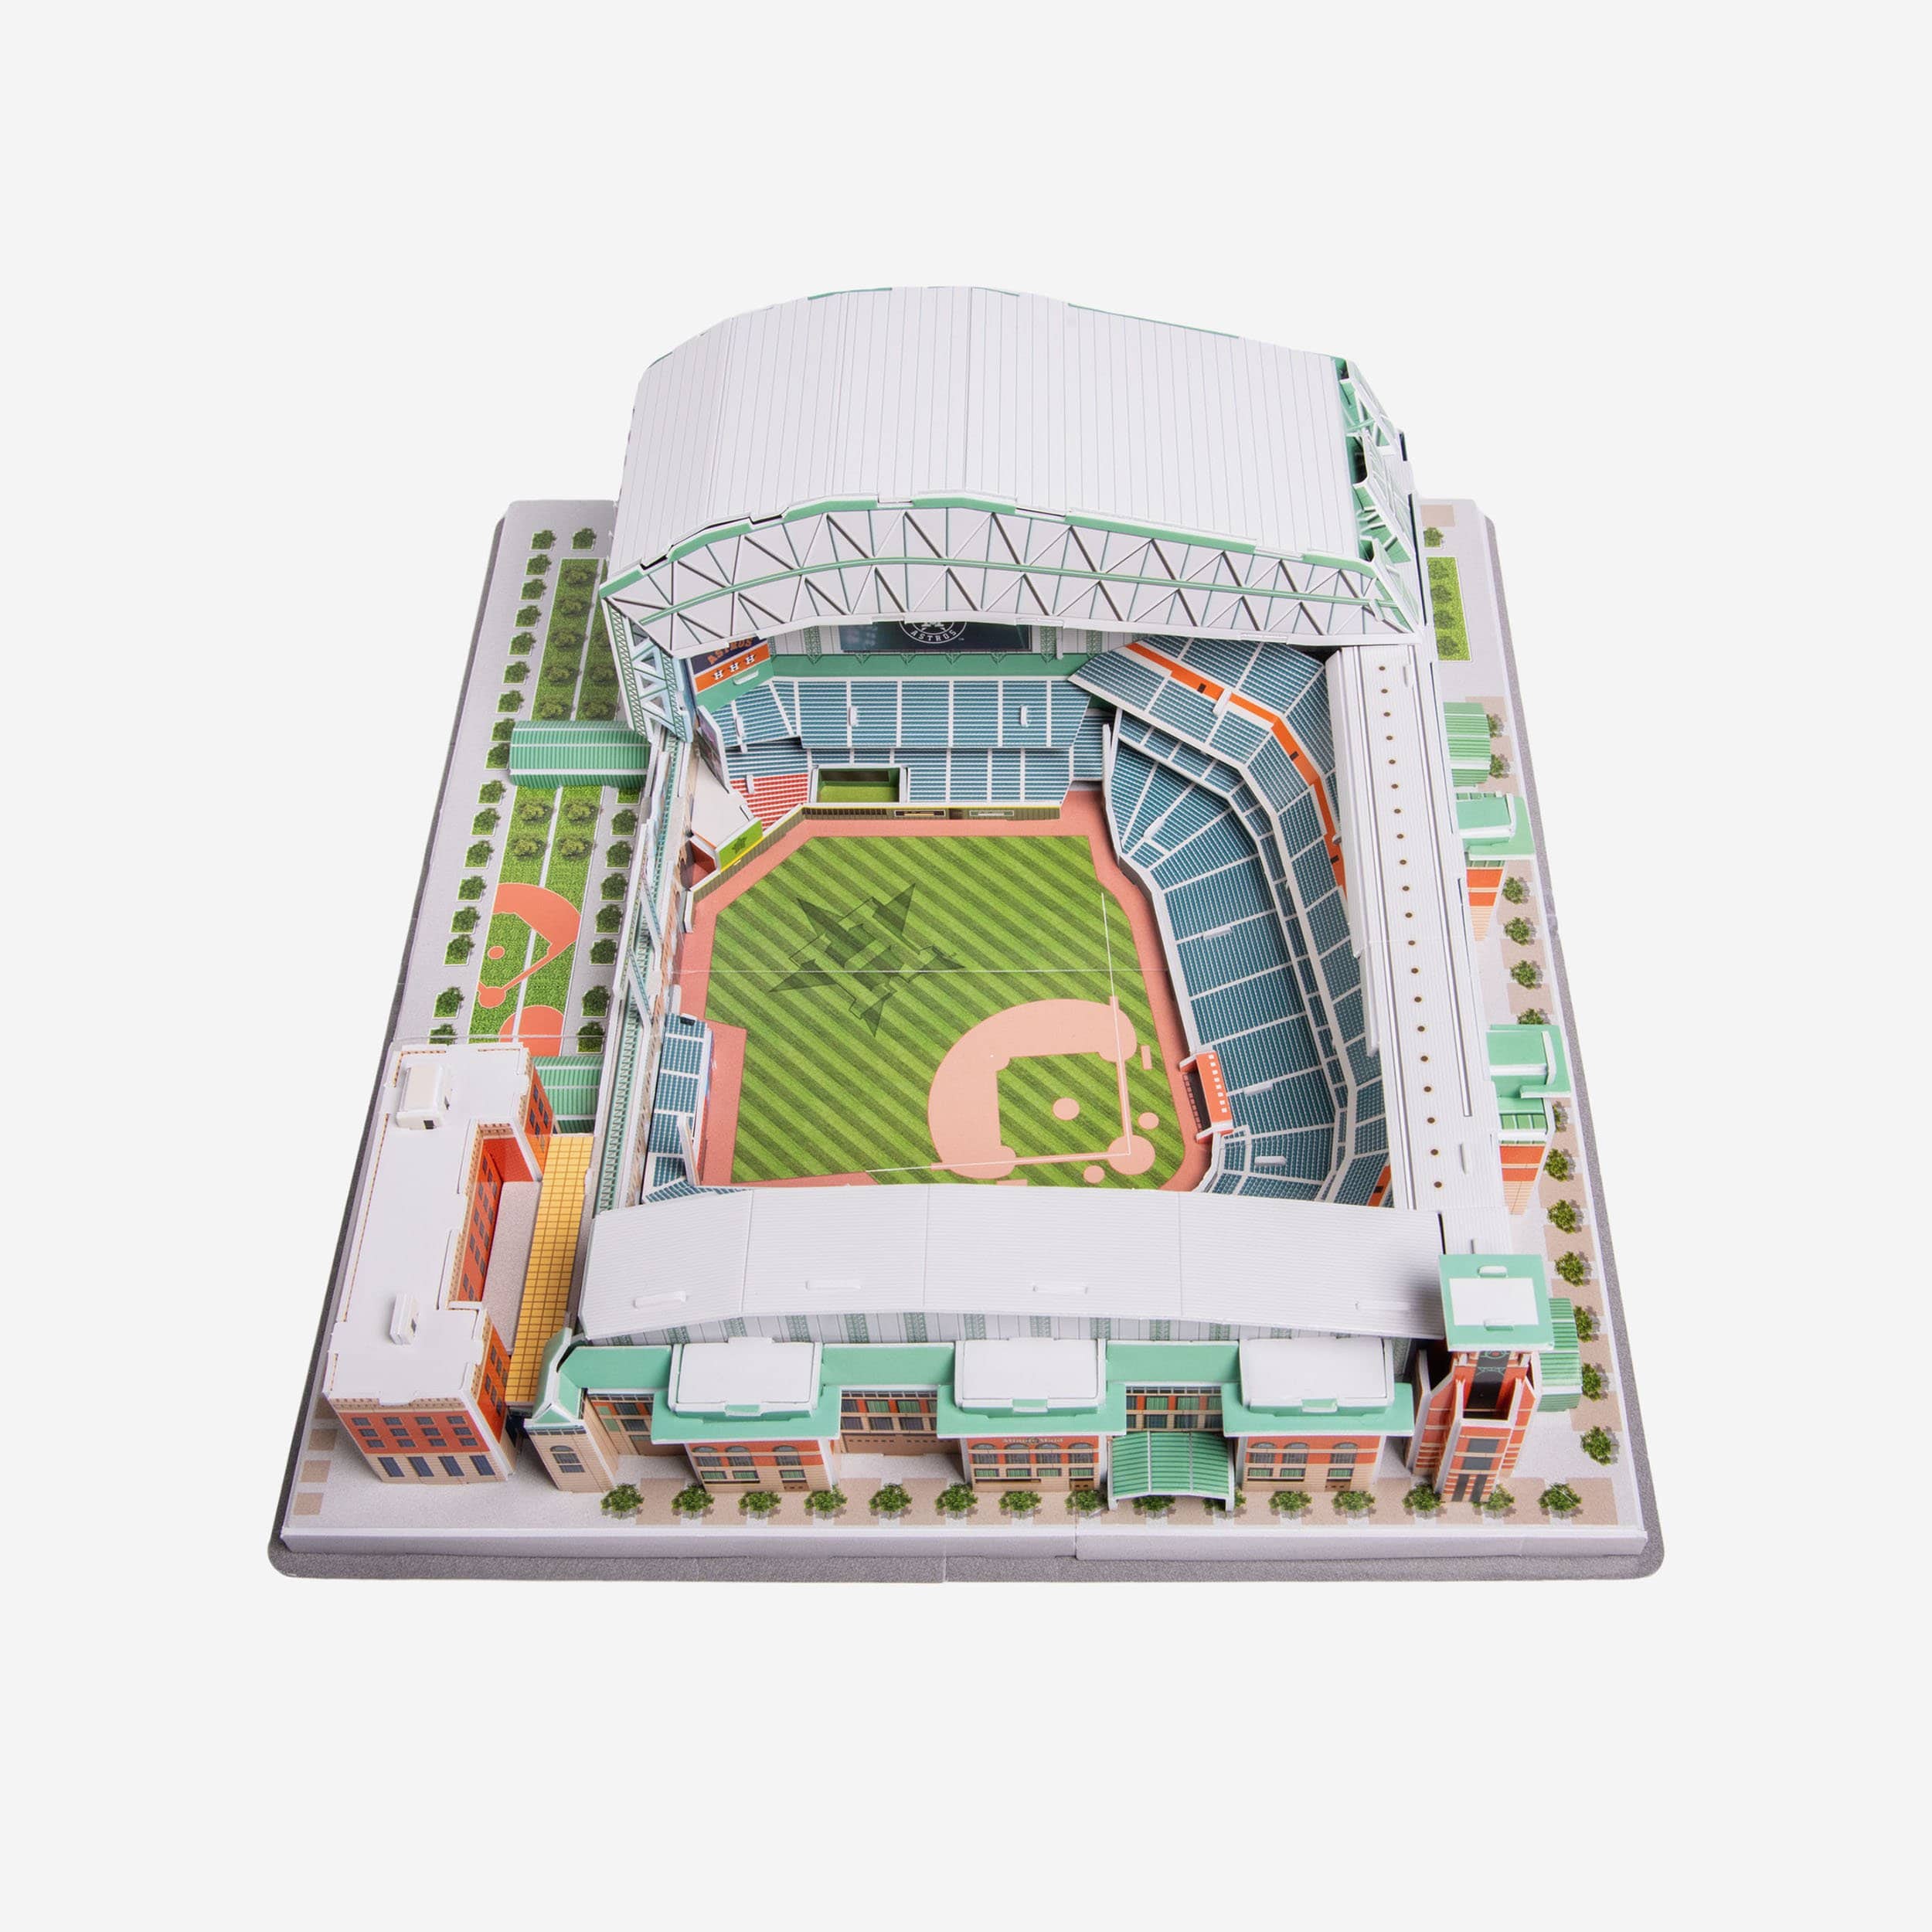 Minute Maid Park - Houston Astros stadium 3D model – Genius&Gerry